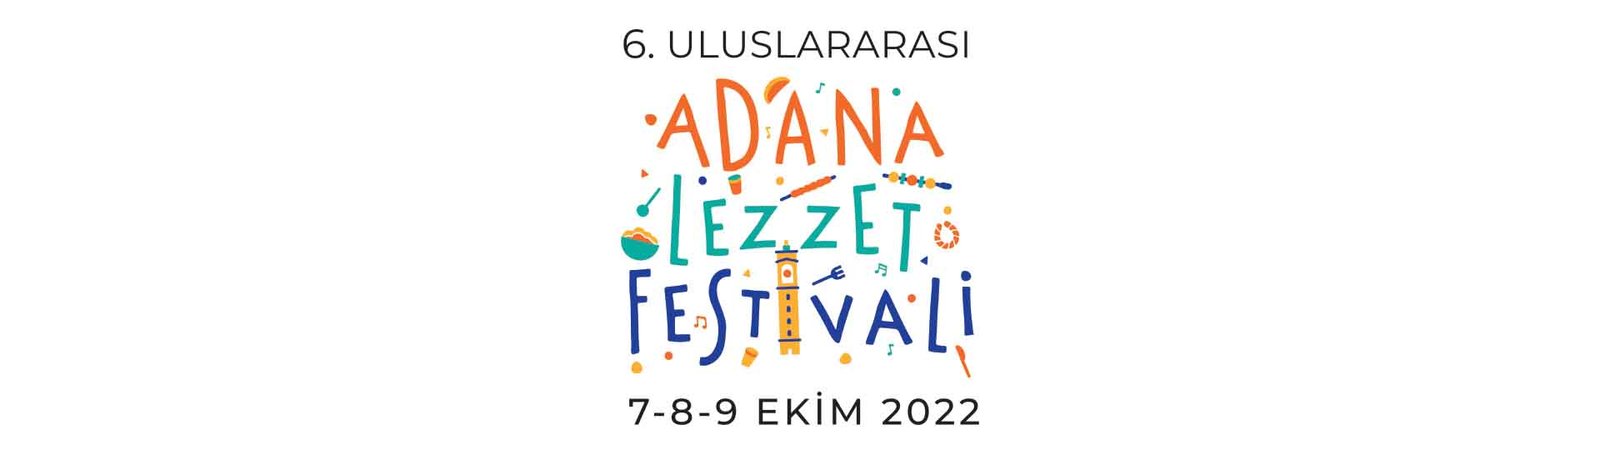 Adana 6. Uluslararası Lezzet Festivali – Sürdürülebilir Gastronomi İlkeleri